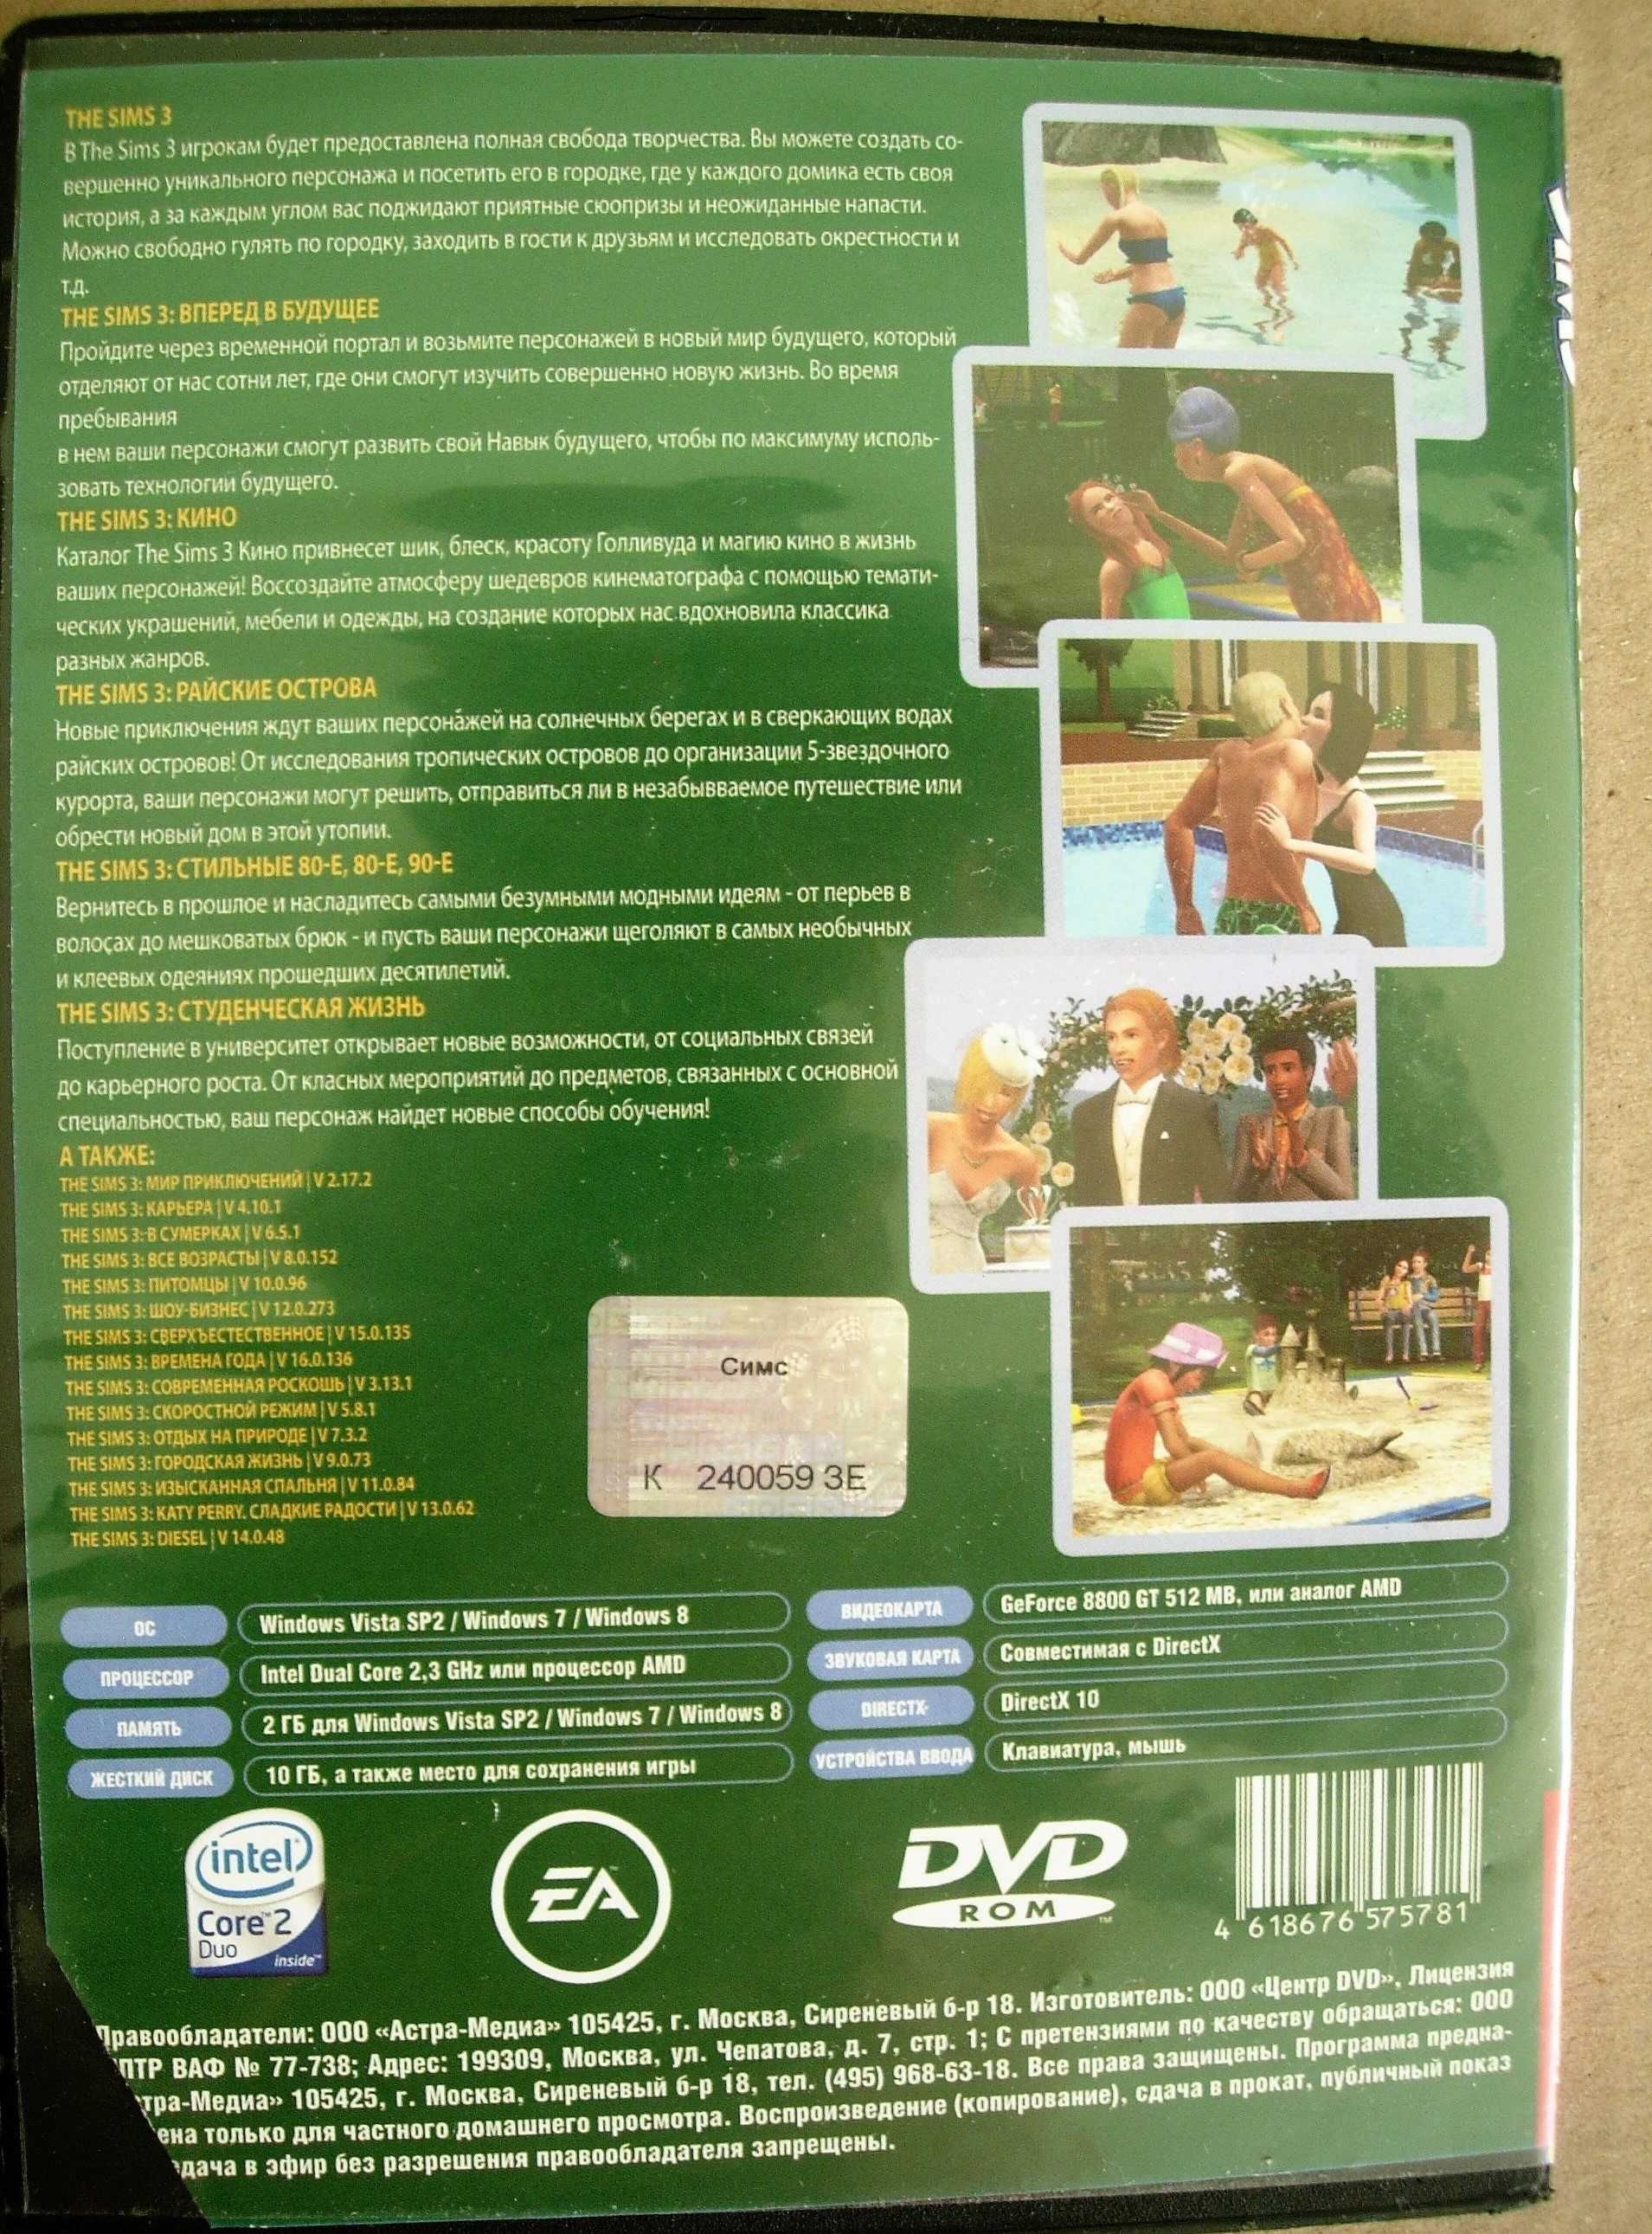 Симс 3 "The Sims 3" РС DVD. "Золотая коллекция", Полное издание